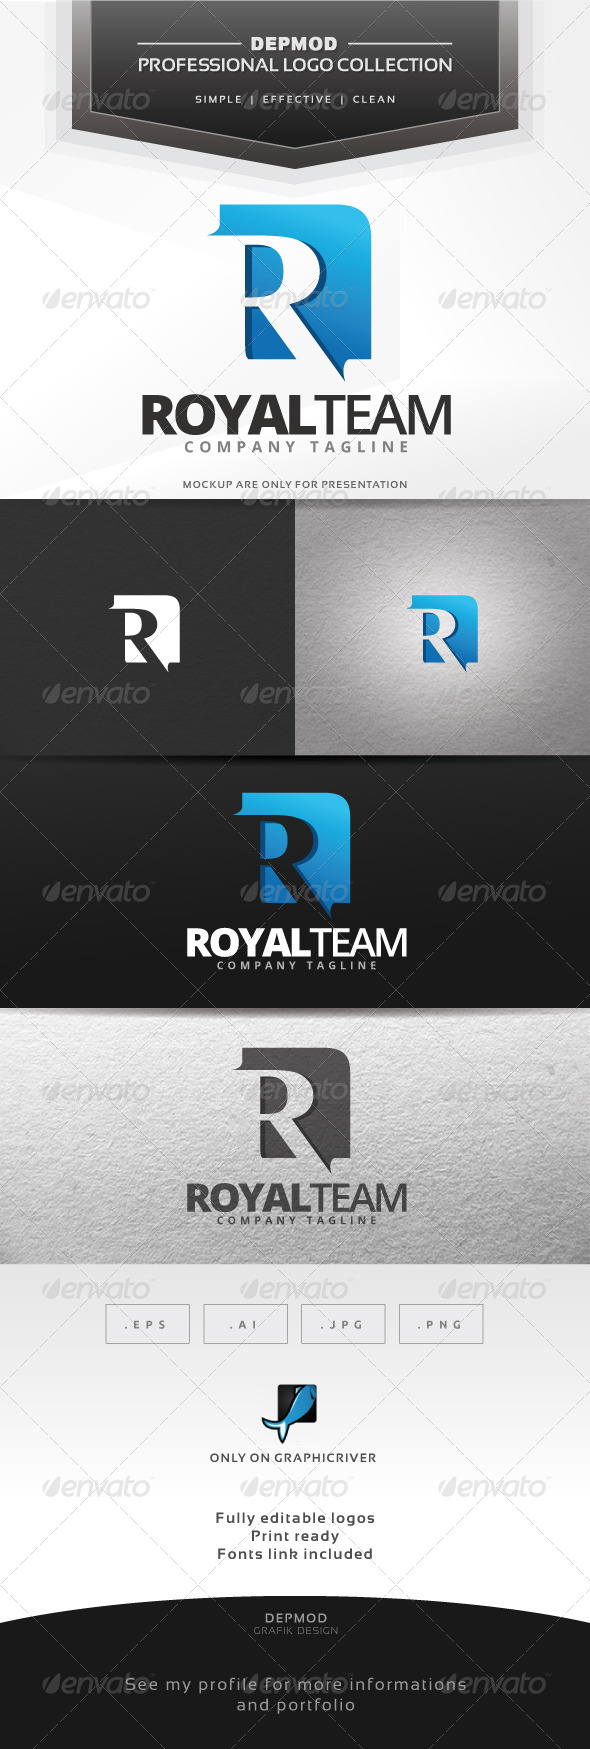 Royal Team Logo